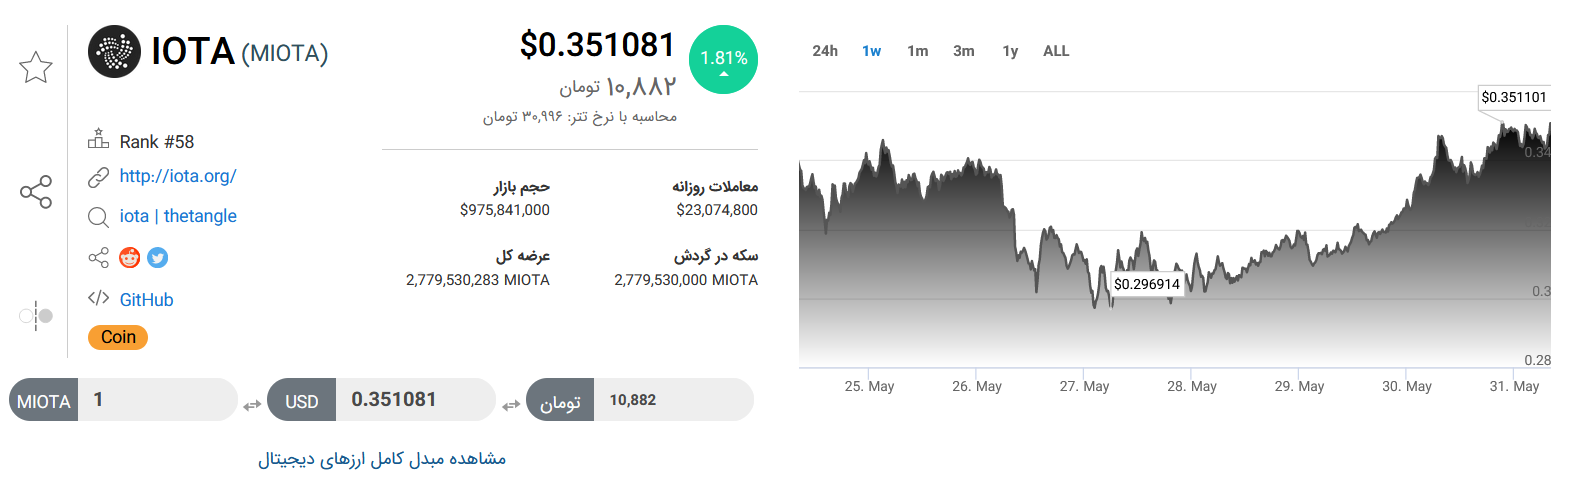 تحلیل تکنیکال رمزارز آیوتا امروز ۱۰ خرداد+ نمودار و قیمت MIOTA